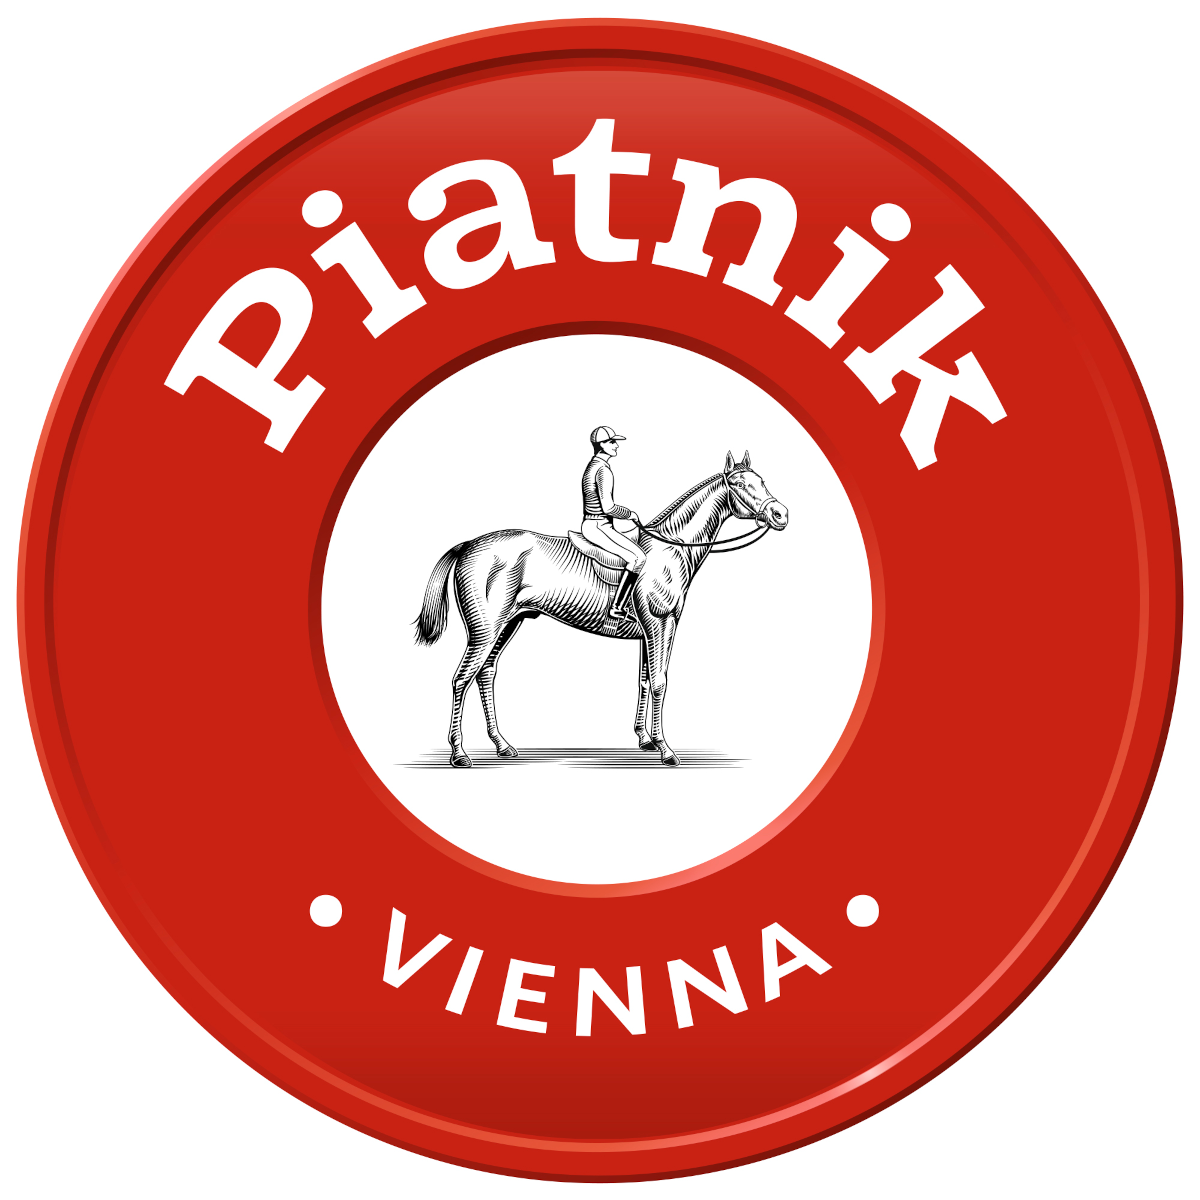 Piatnik Historie: 200 Jahre Spielfreude